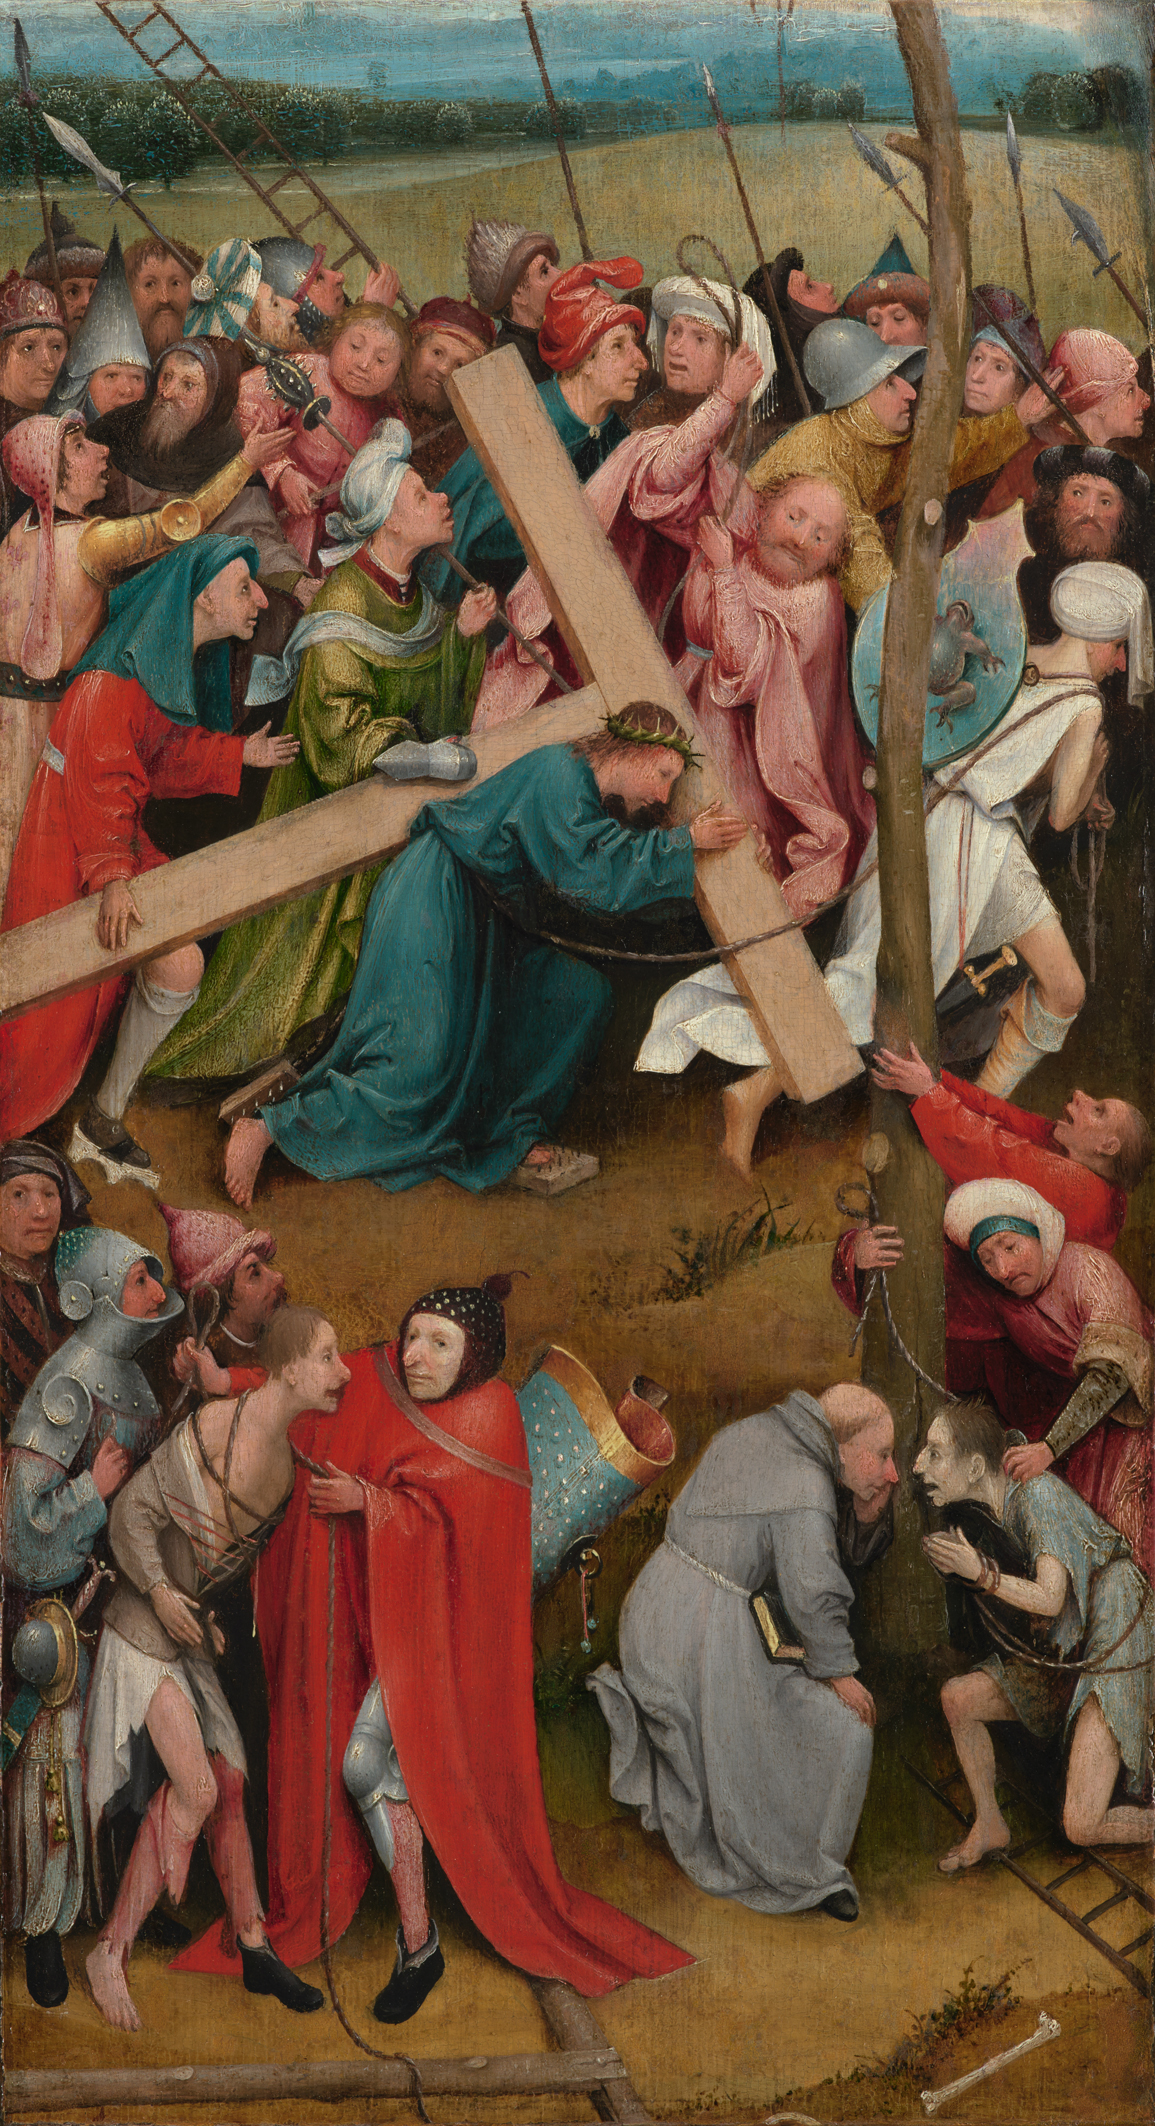 Niesienie krzyża by Hieronymus Bosch - 1480/90 - 57 cm × 32 cm 